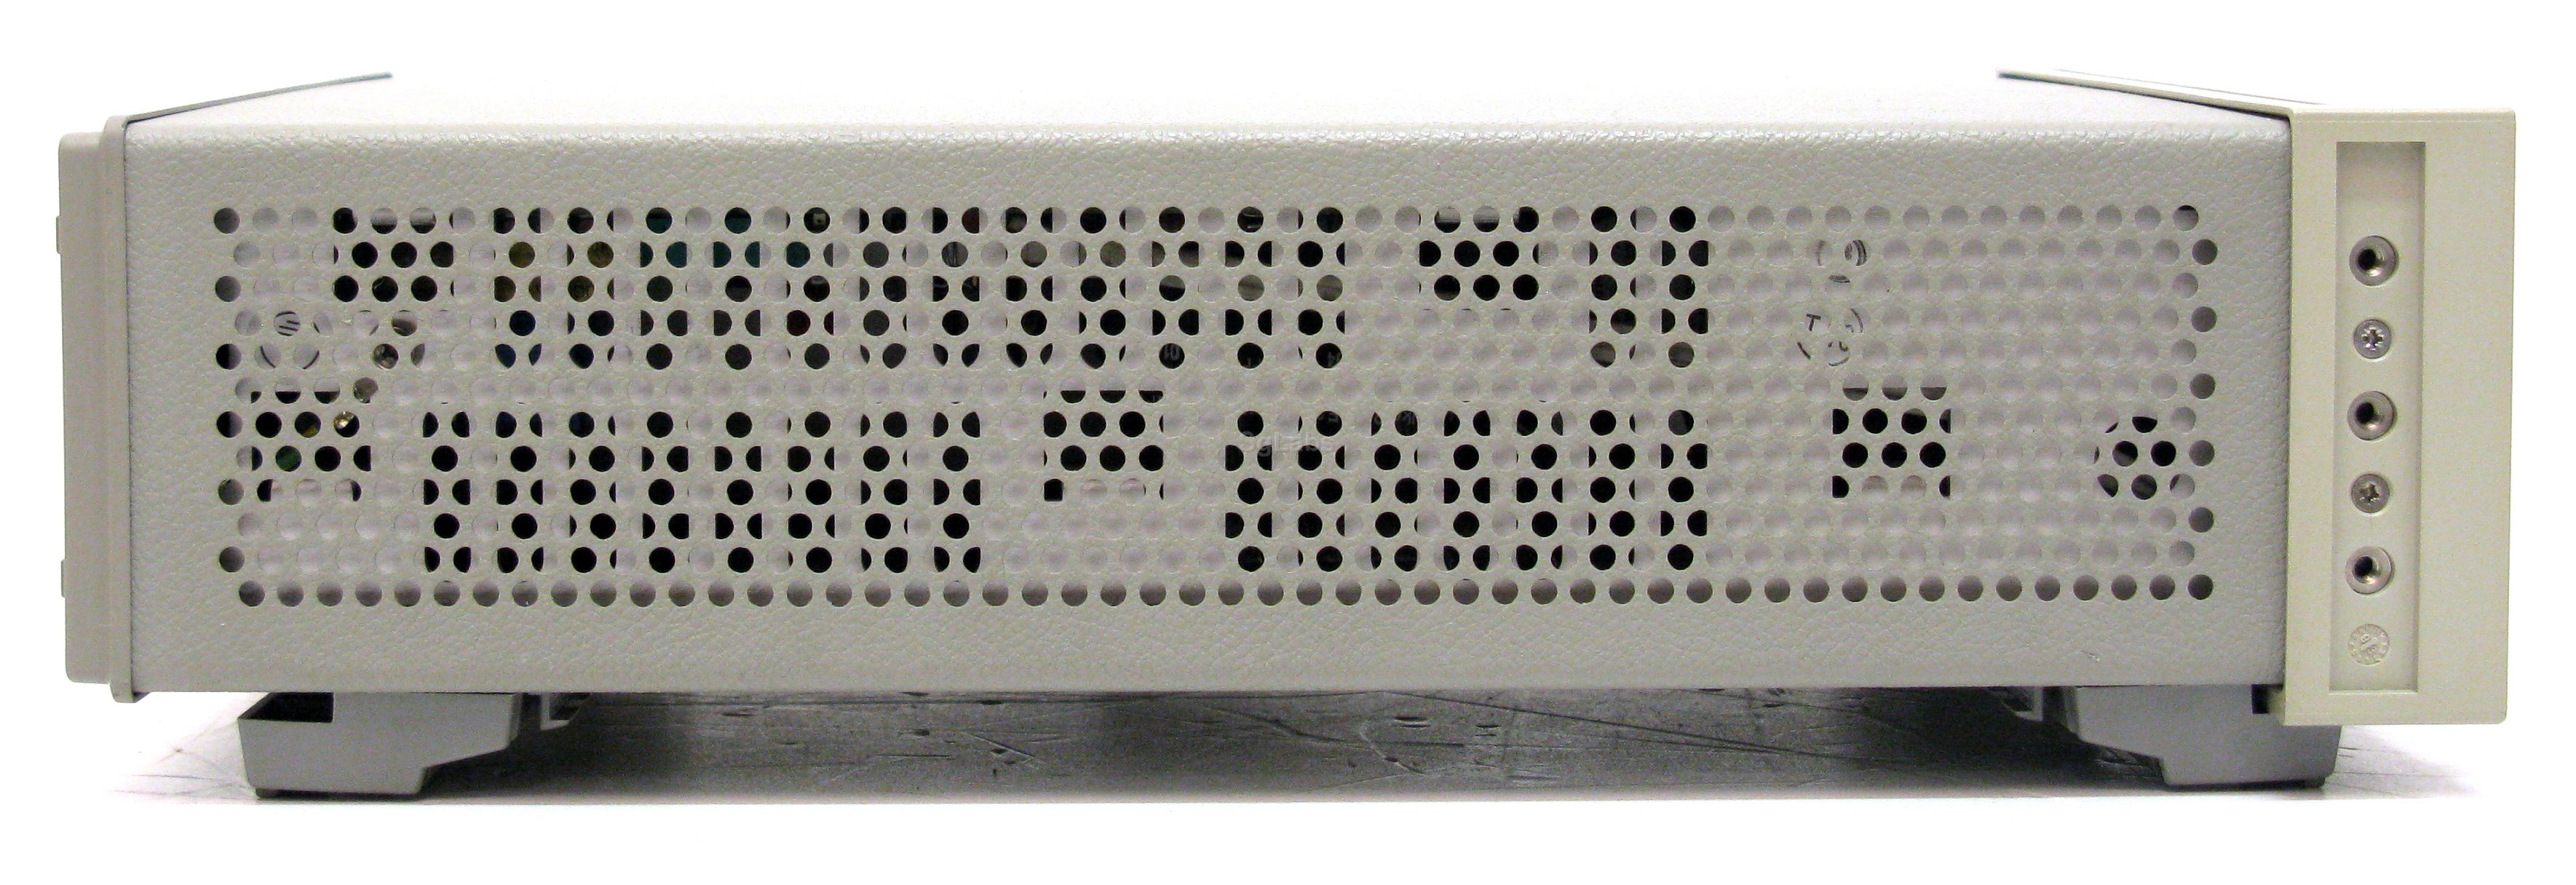 定番の中古商品 HP/エイチピー 828A イメージドラム シアン CF359A コピー用紙・印刷用紙